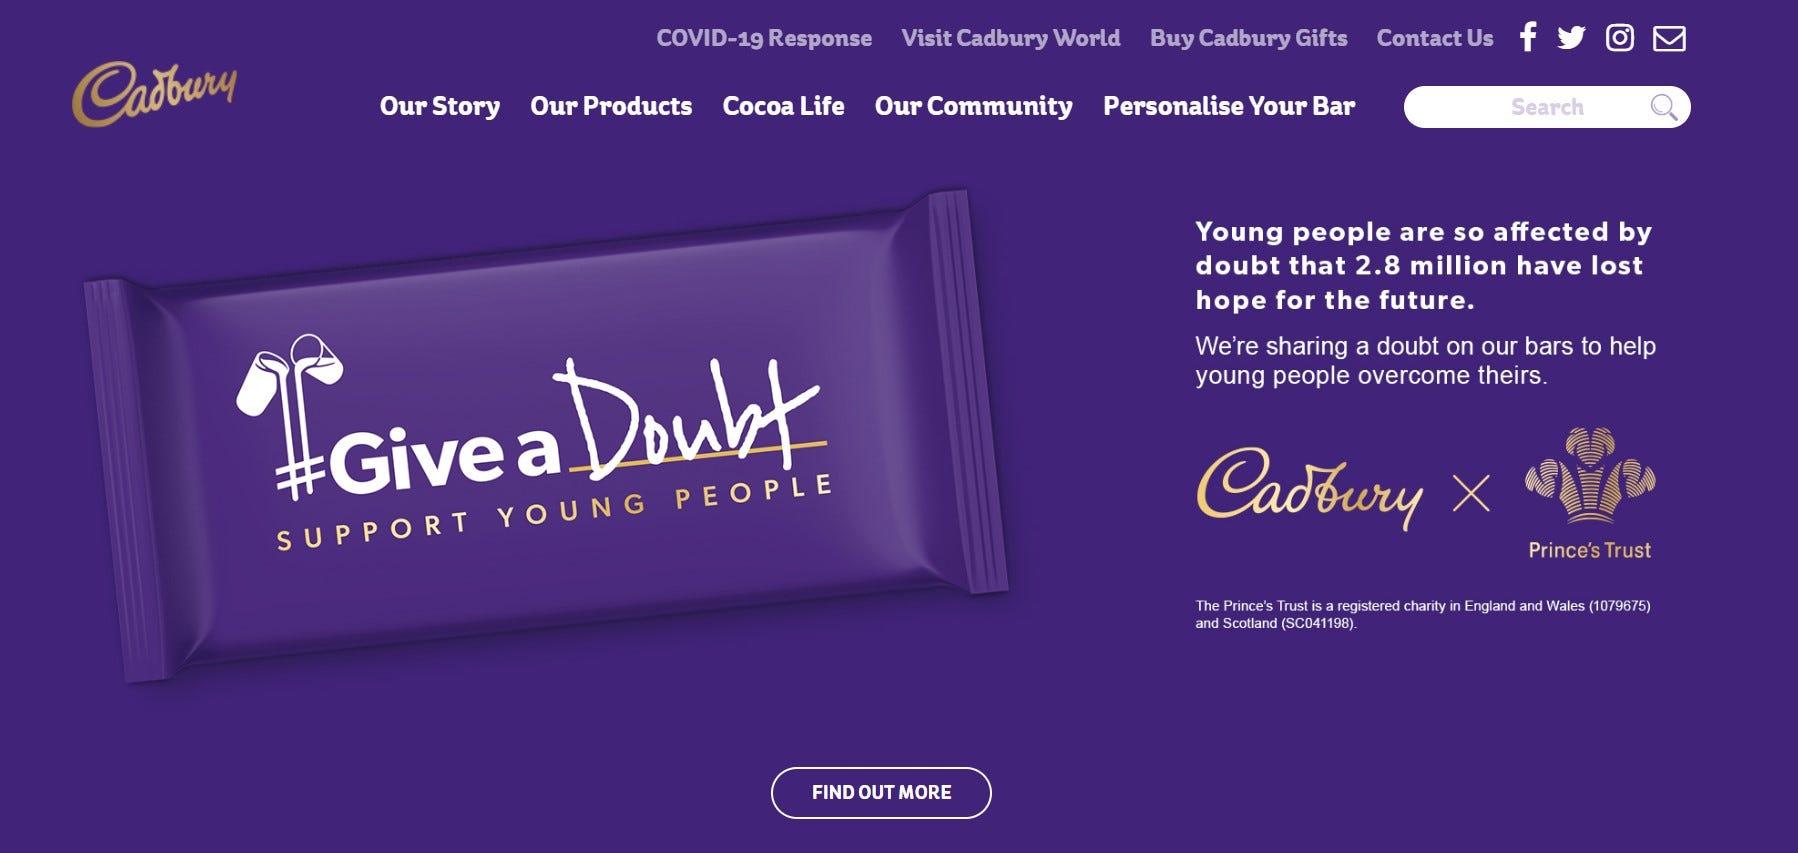 Trang chủ Cadbury được thiết kế tương tự như màu vỏ ngoài của sản phẩm